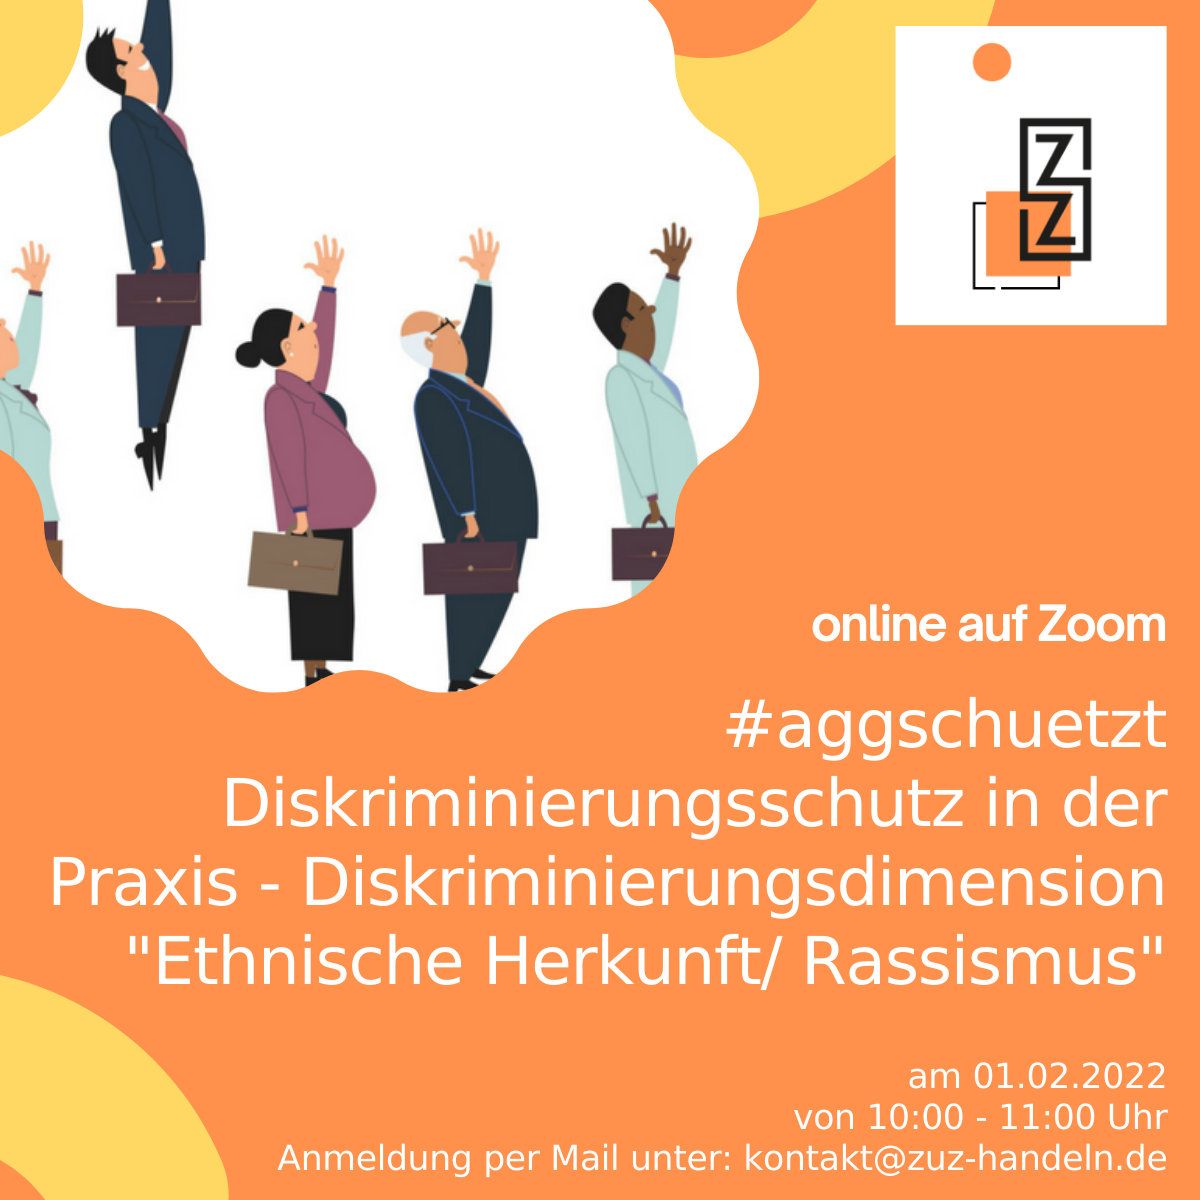 Rückschau: Veranstaltung zu Diskriminierungsdimension ethnische Herkunft/ Rassismus